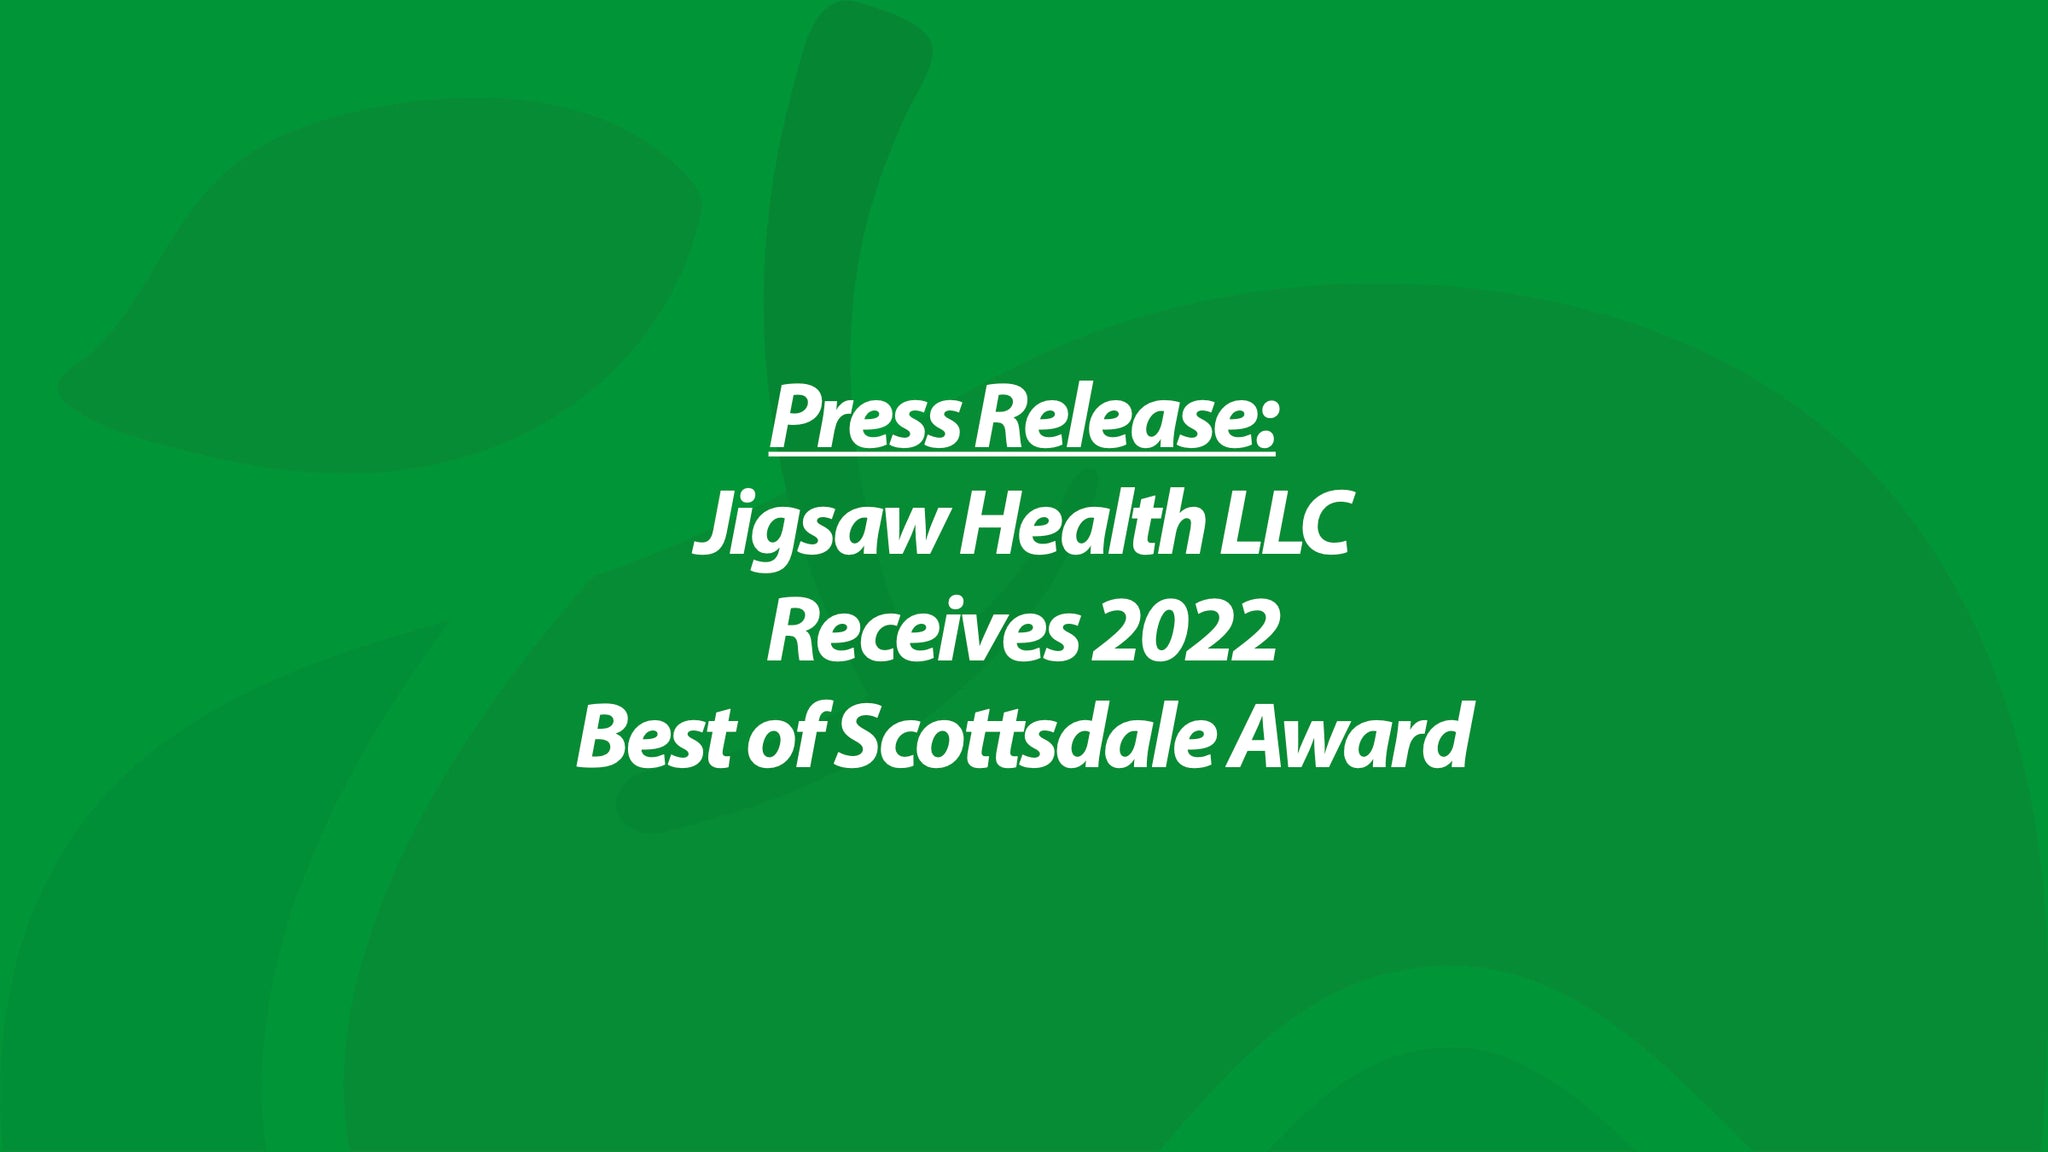 Press Release: Jigsaw Health LLC Receives 2022 Best of Scottsdale Award